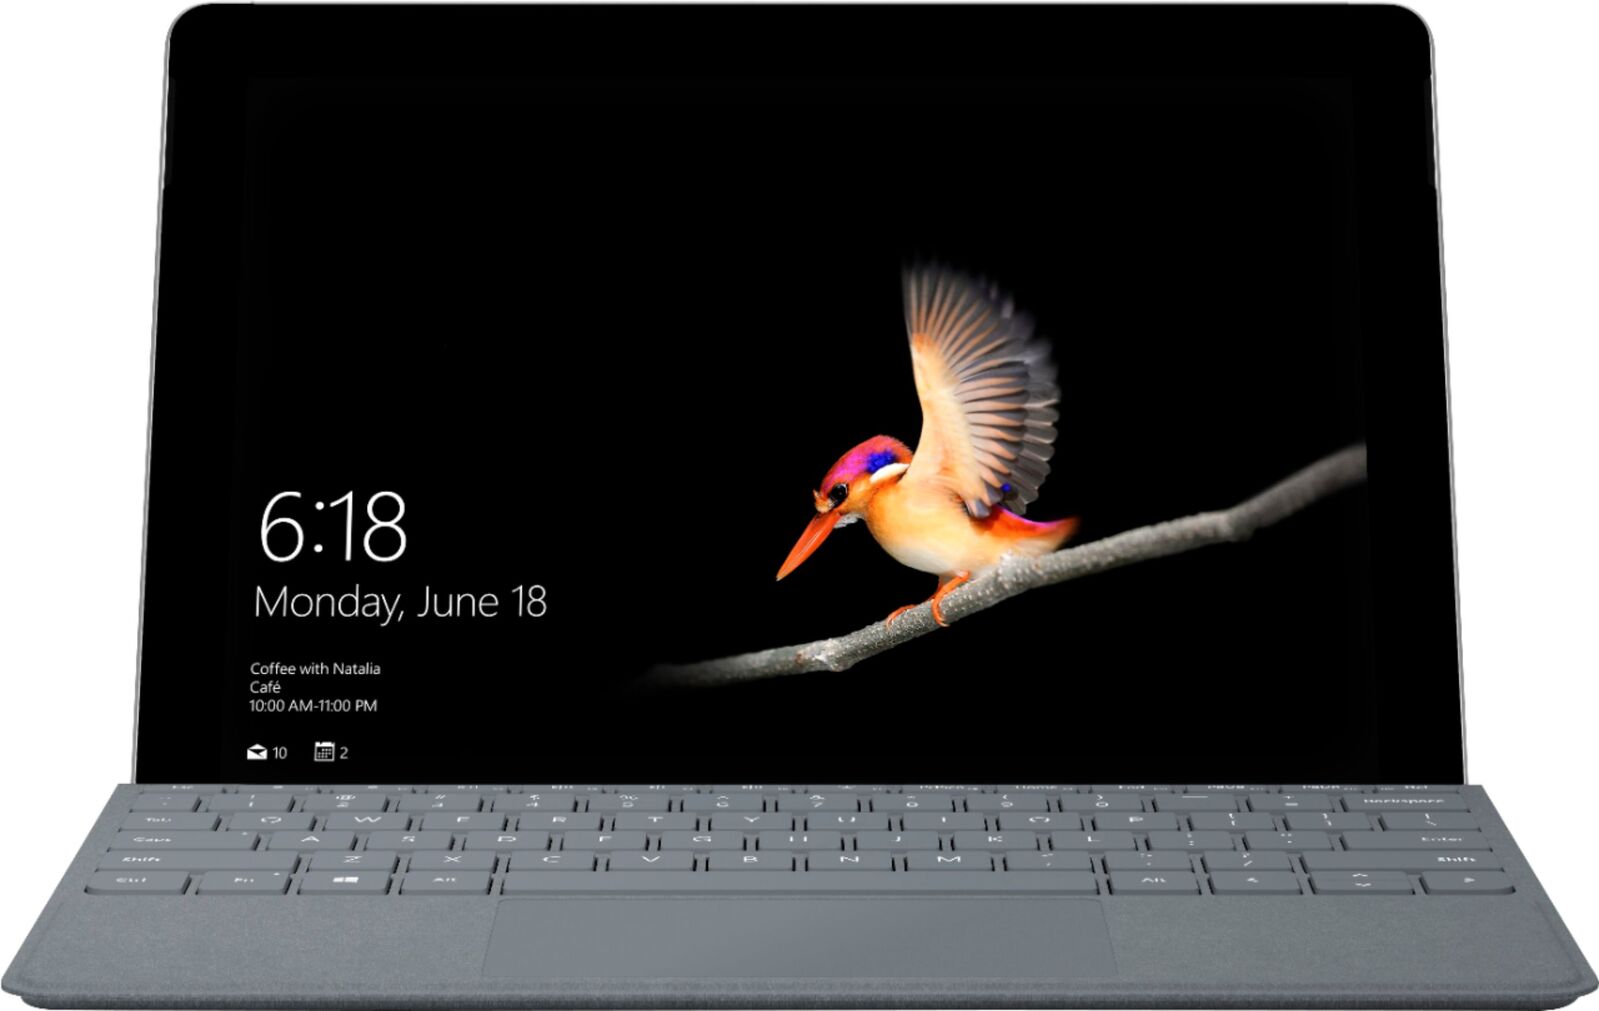 Microsoft Surface Go Intel Pentium 4415Y 1.60GHz 8GB RAM 128GB eMMC 10" + Keyboard NO OS Image 2